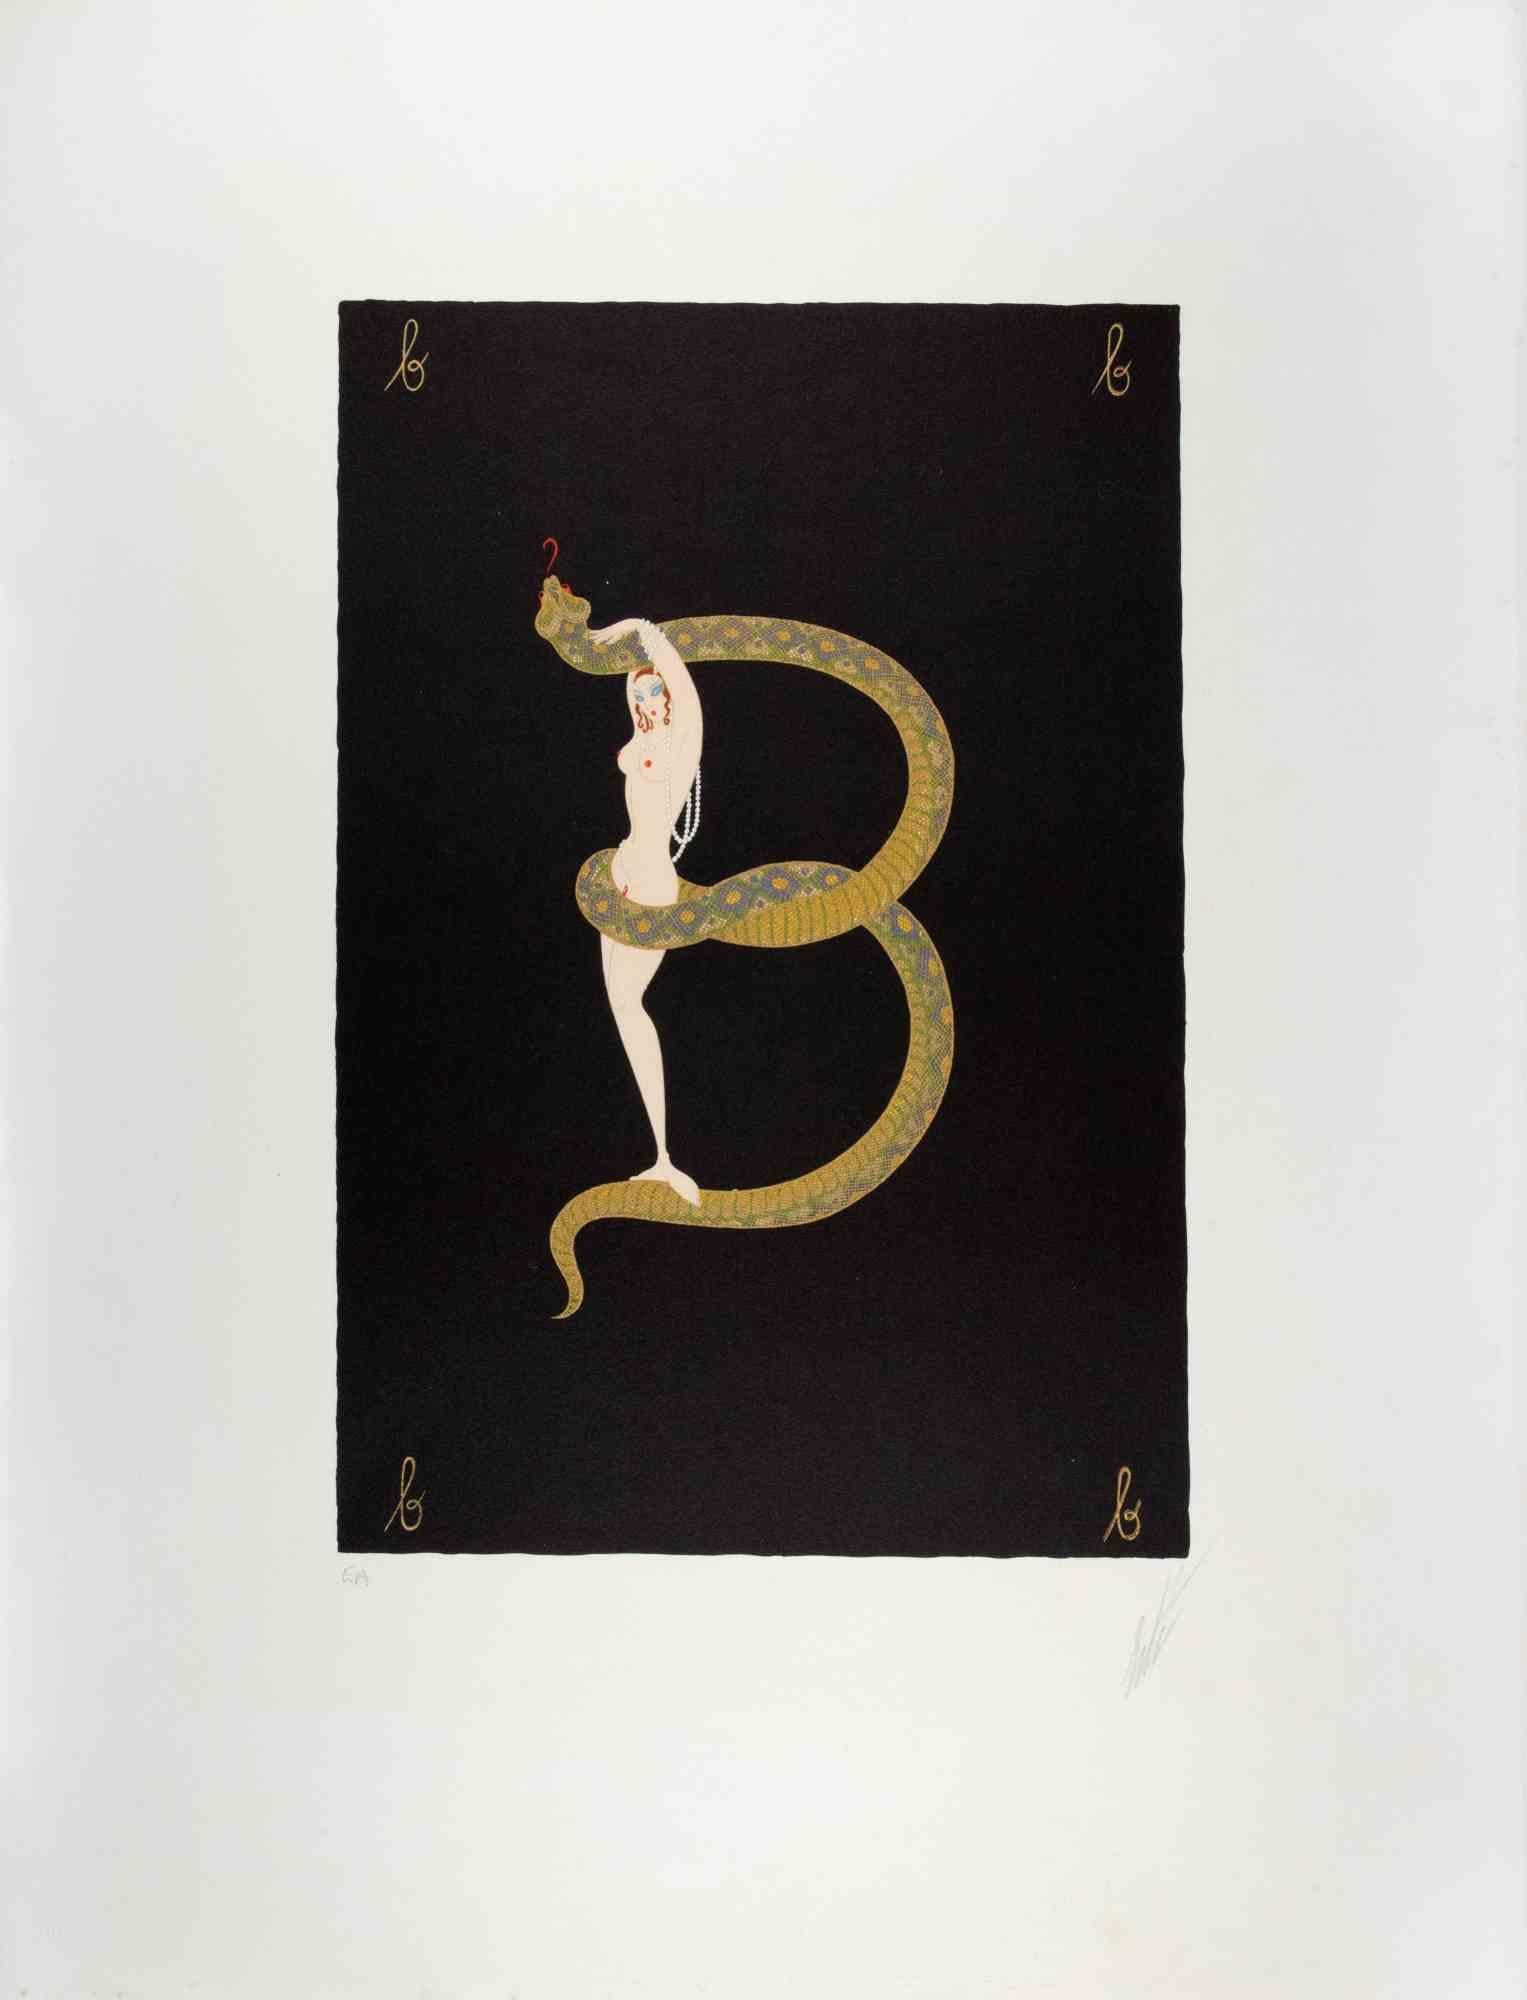 Letter B - Lithograph by Erté - 1970s